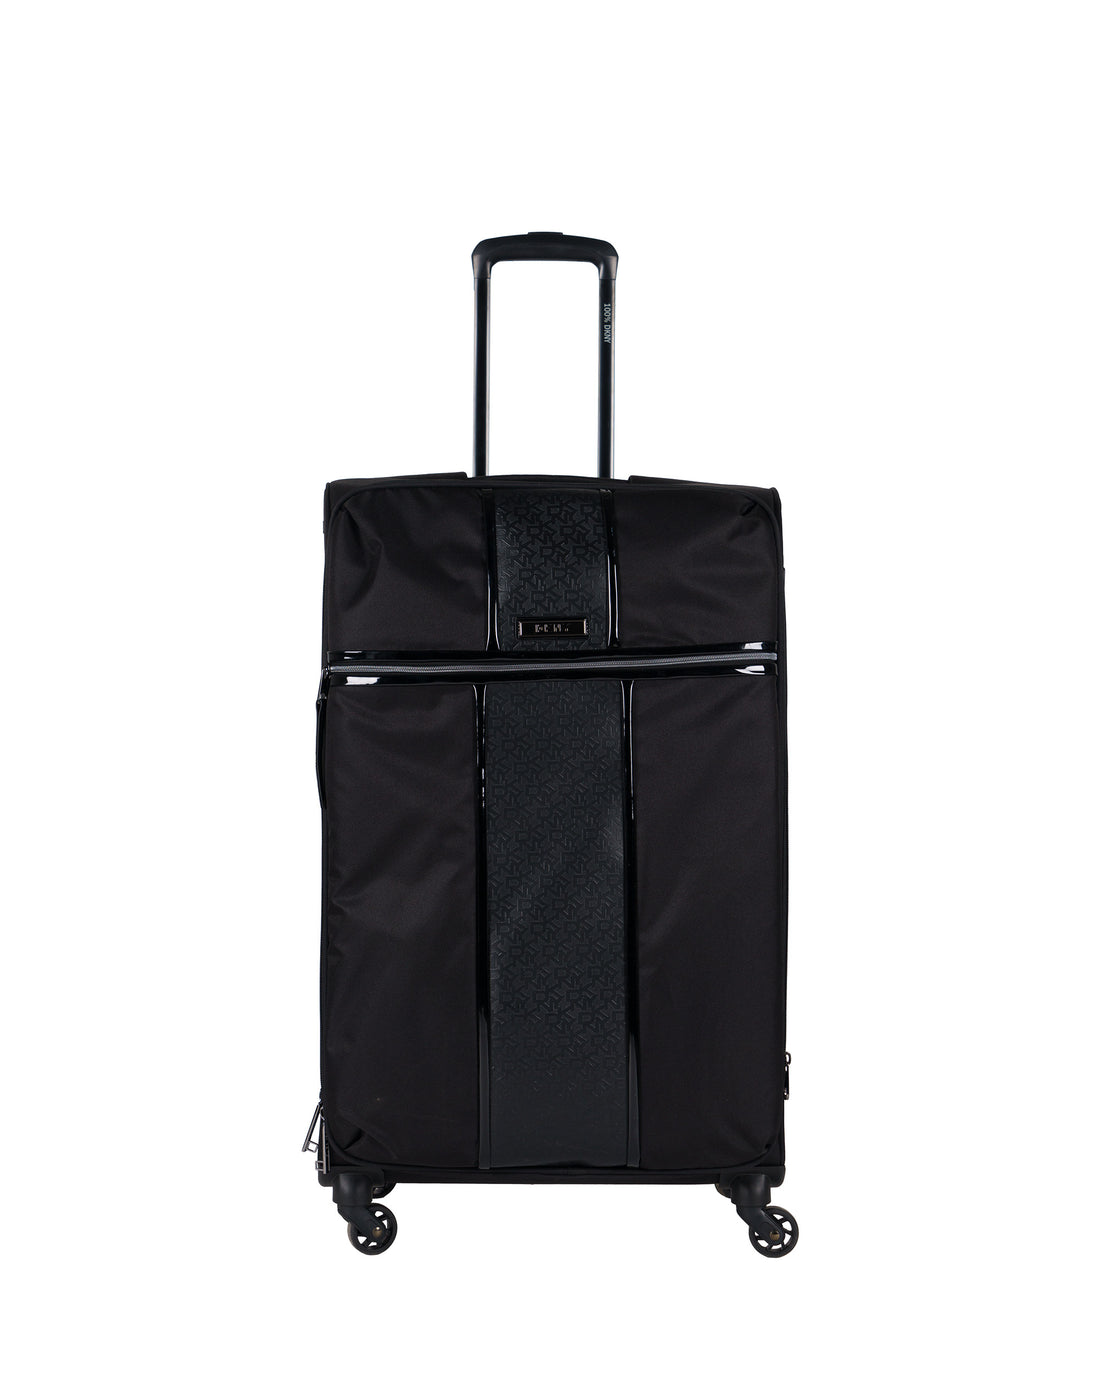 DKNY Black Large Luggage